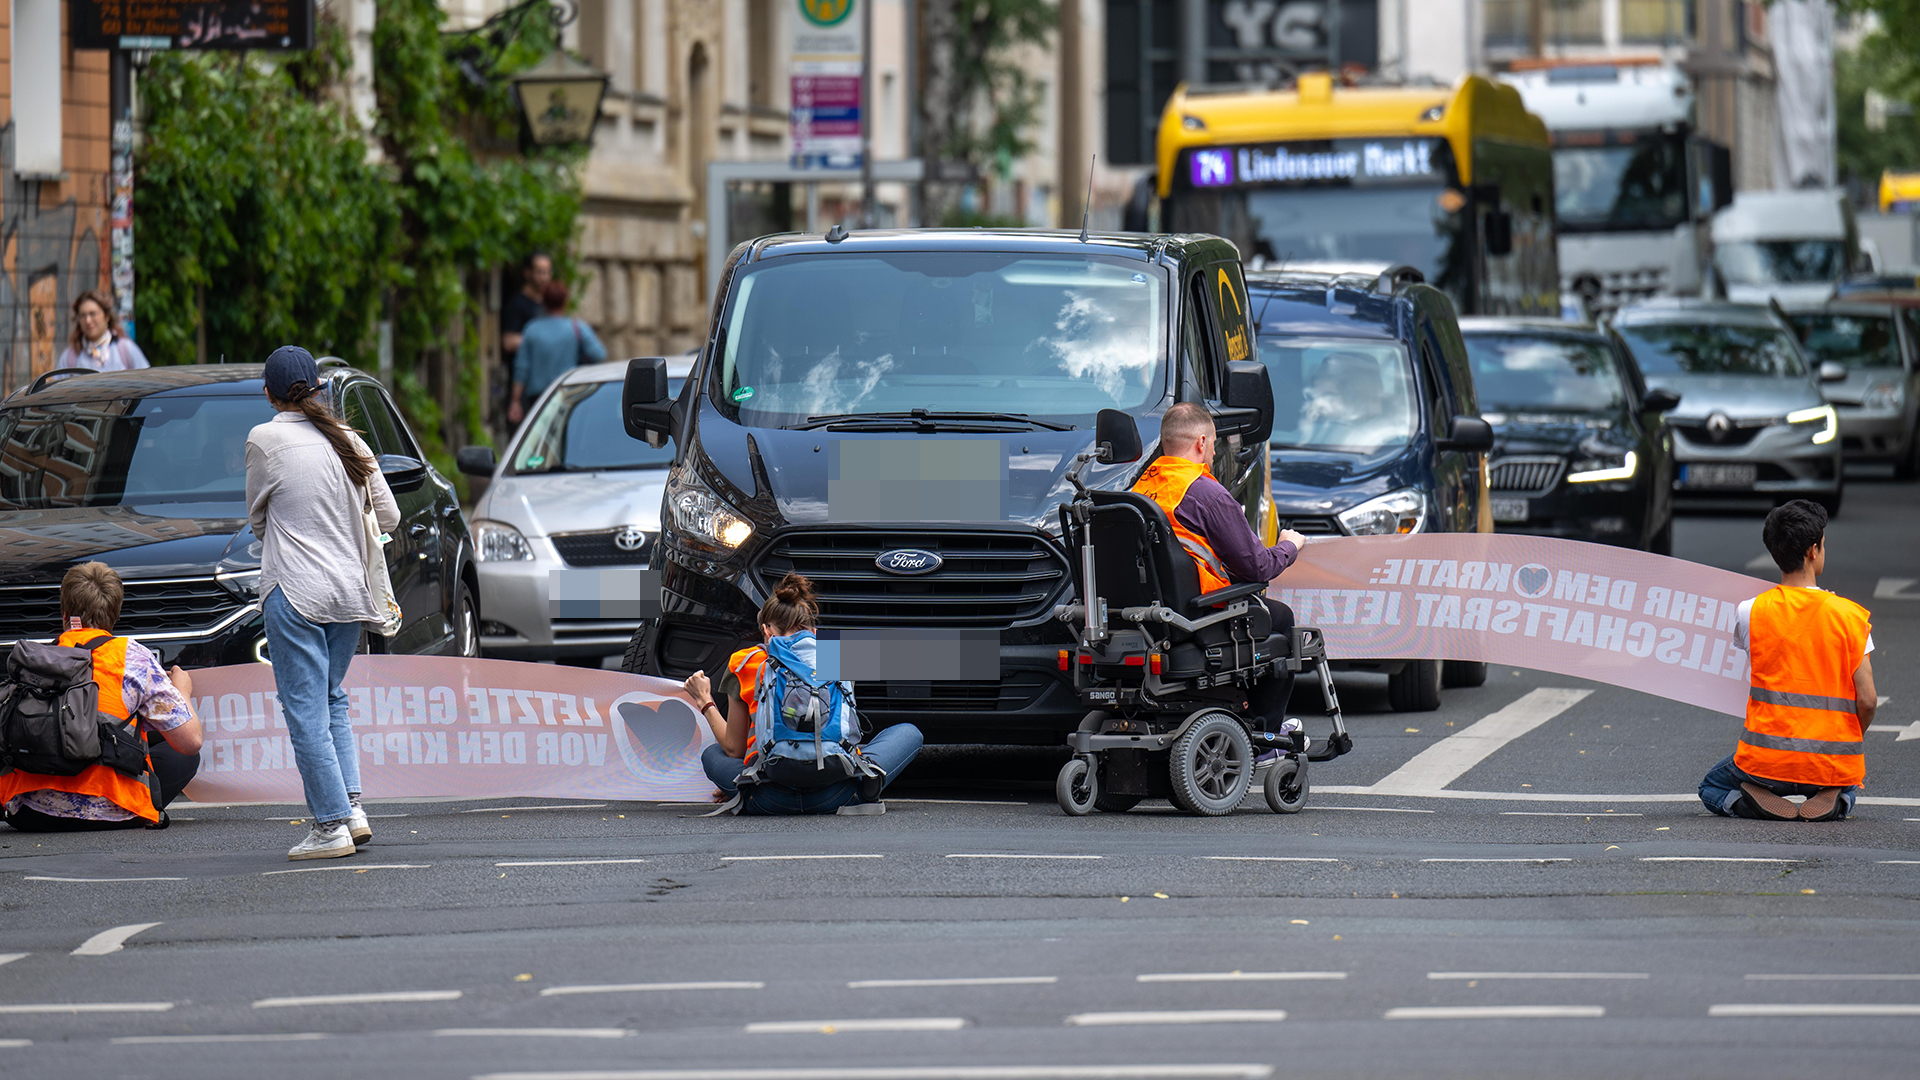 Klimaaktivisten der Gruppe "Letzte Generation" blockieren eine Straße in Leipzig.